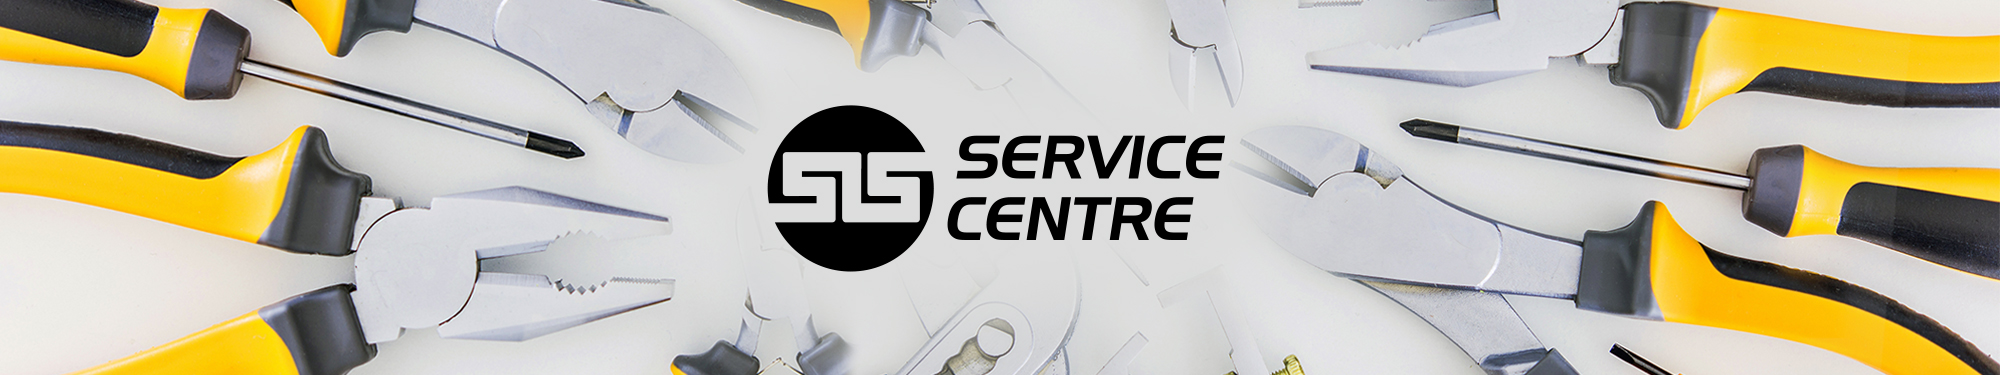 Service Centre - About